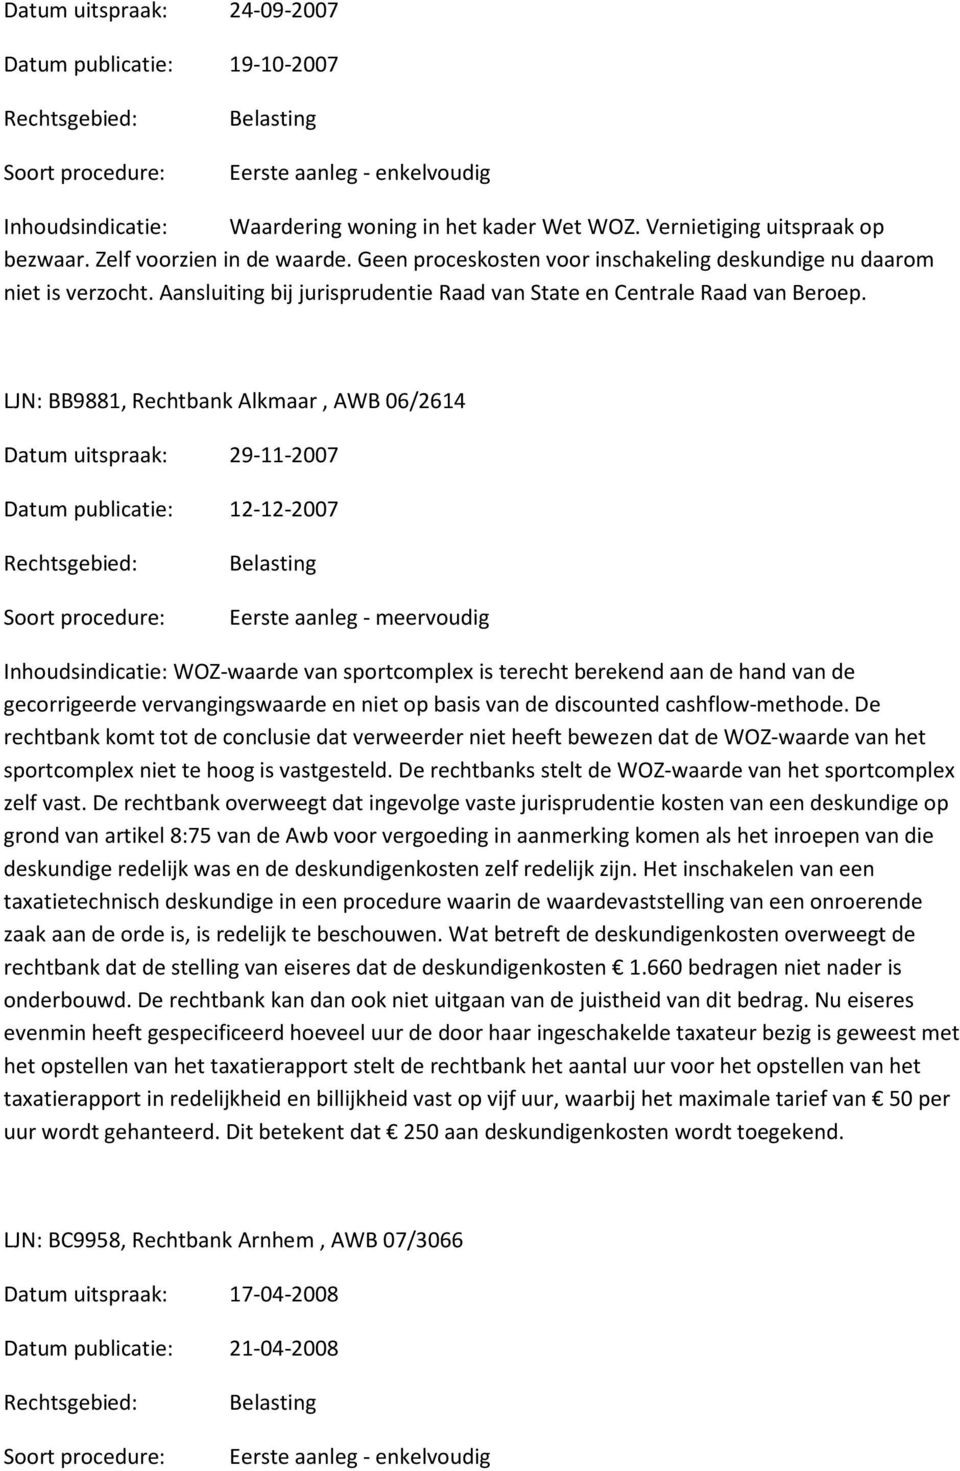 LJN: BB9881, Rechtbank Alkmaar, AWB 06/2614 Datum uitspraak: 29-11-2007 Datum publicatie: 12-12-2007 Inhoudsindicatie: WOZ-waarde van sportcomplex is terecht berekend aan de hand van de gecorrigeerde